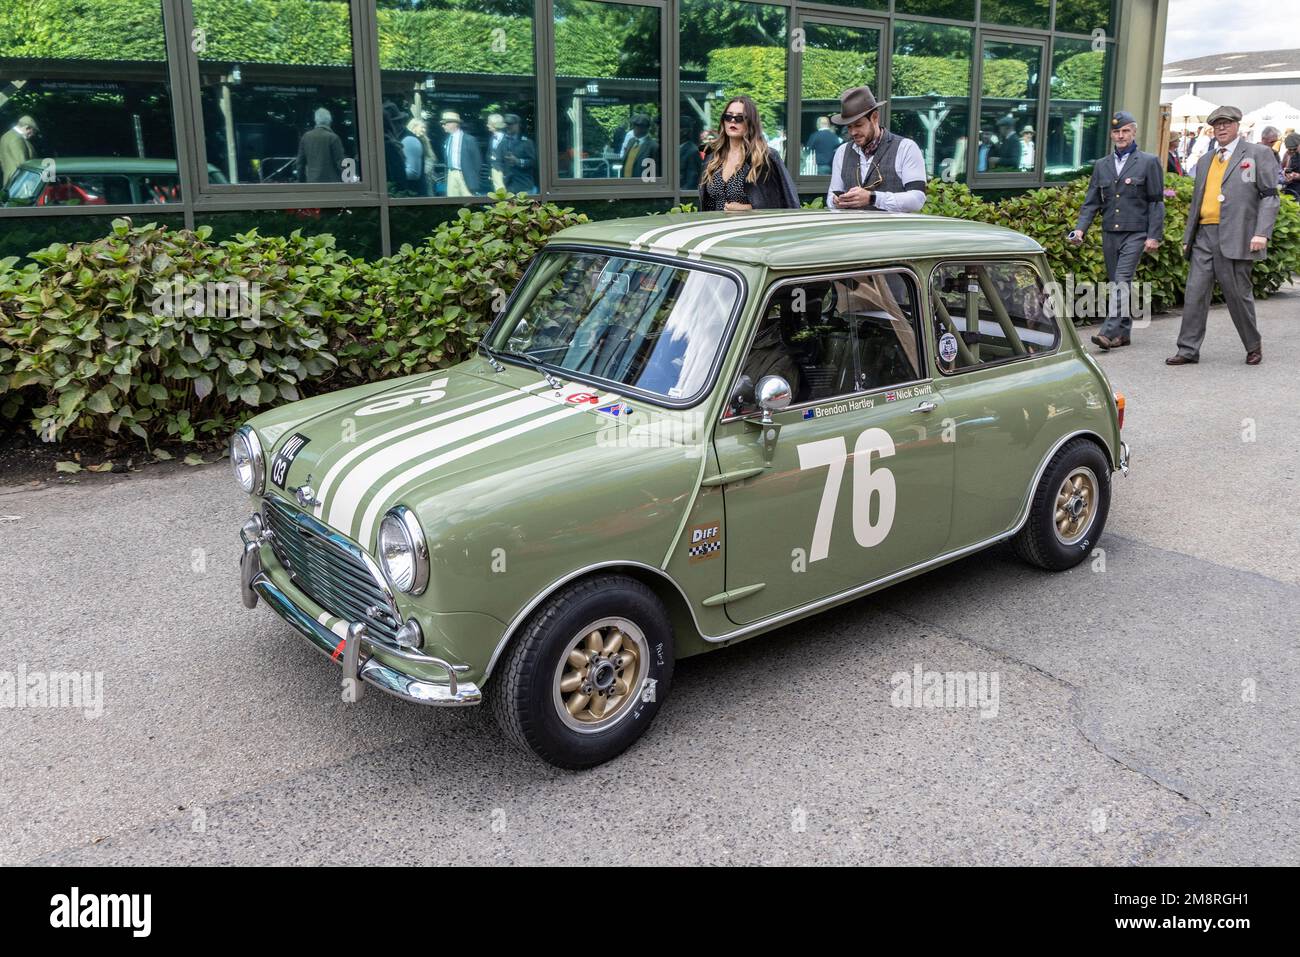 Garage mit Schlüsselanhänger – Mini Cooper British Racing Green